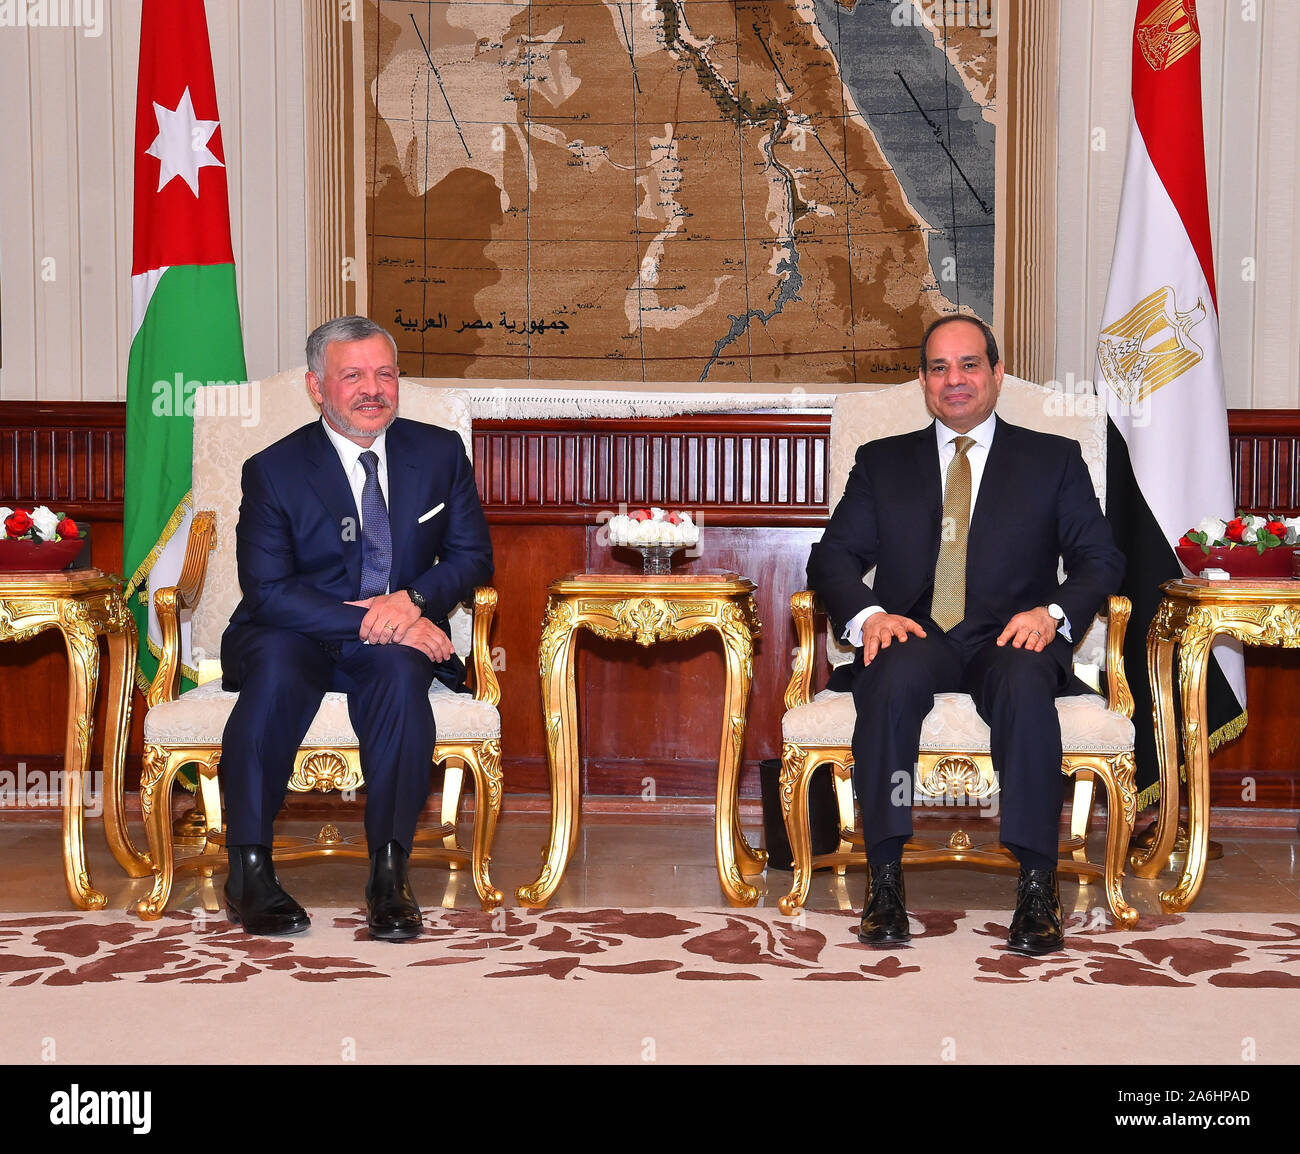 Le Caire, Égypte -- 9 octobre 2019 -- le roi Abdallah II de Jordanie a fait 1 journée de visite d'Etat en Egypte pour des entretiens avec le président égyptien Abdel Fatah al Sisi pour discuter des questions et des bilteral relations. (Photo) de la présidence égyptienne Banque D'Images